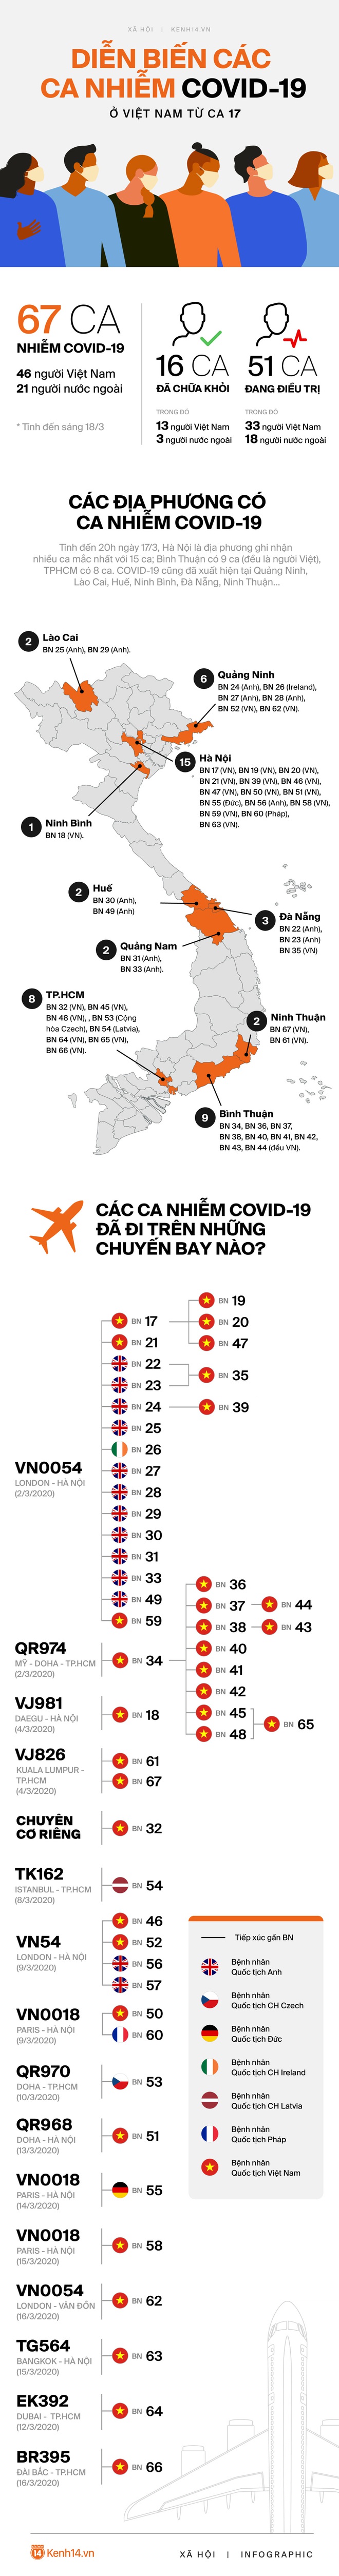 Infographic: Toàn cảnh các ca nhiễm Covid-19 tại Việt Nam kể từ sau ca mắc thứ 17 - Ảnh 1.